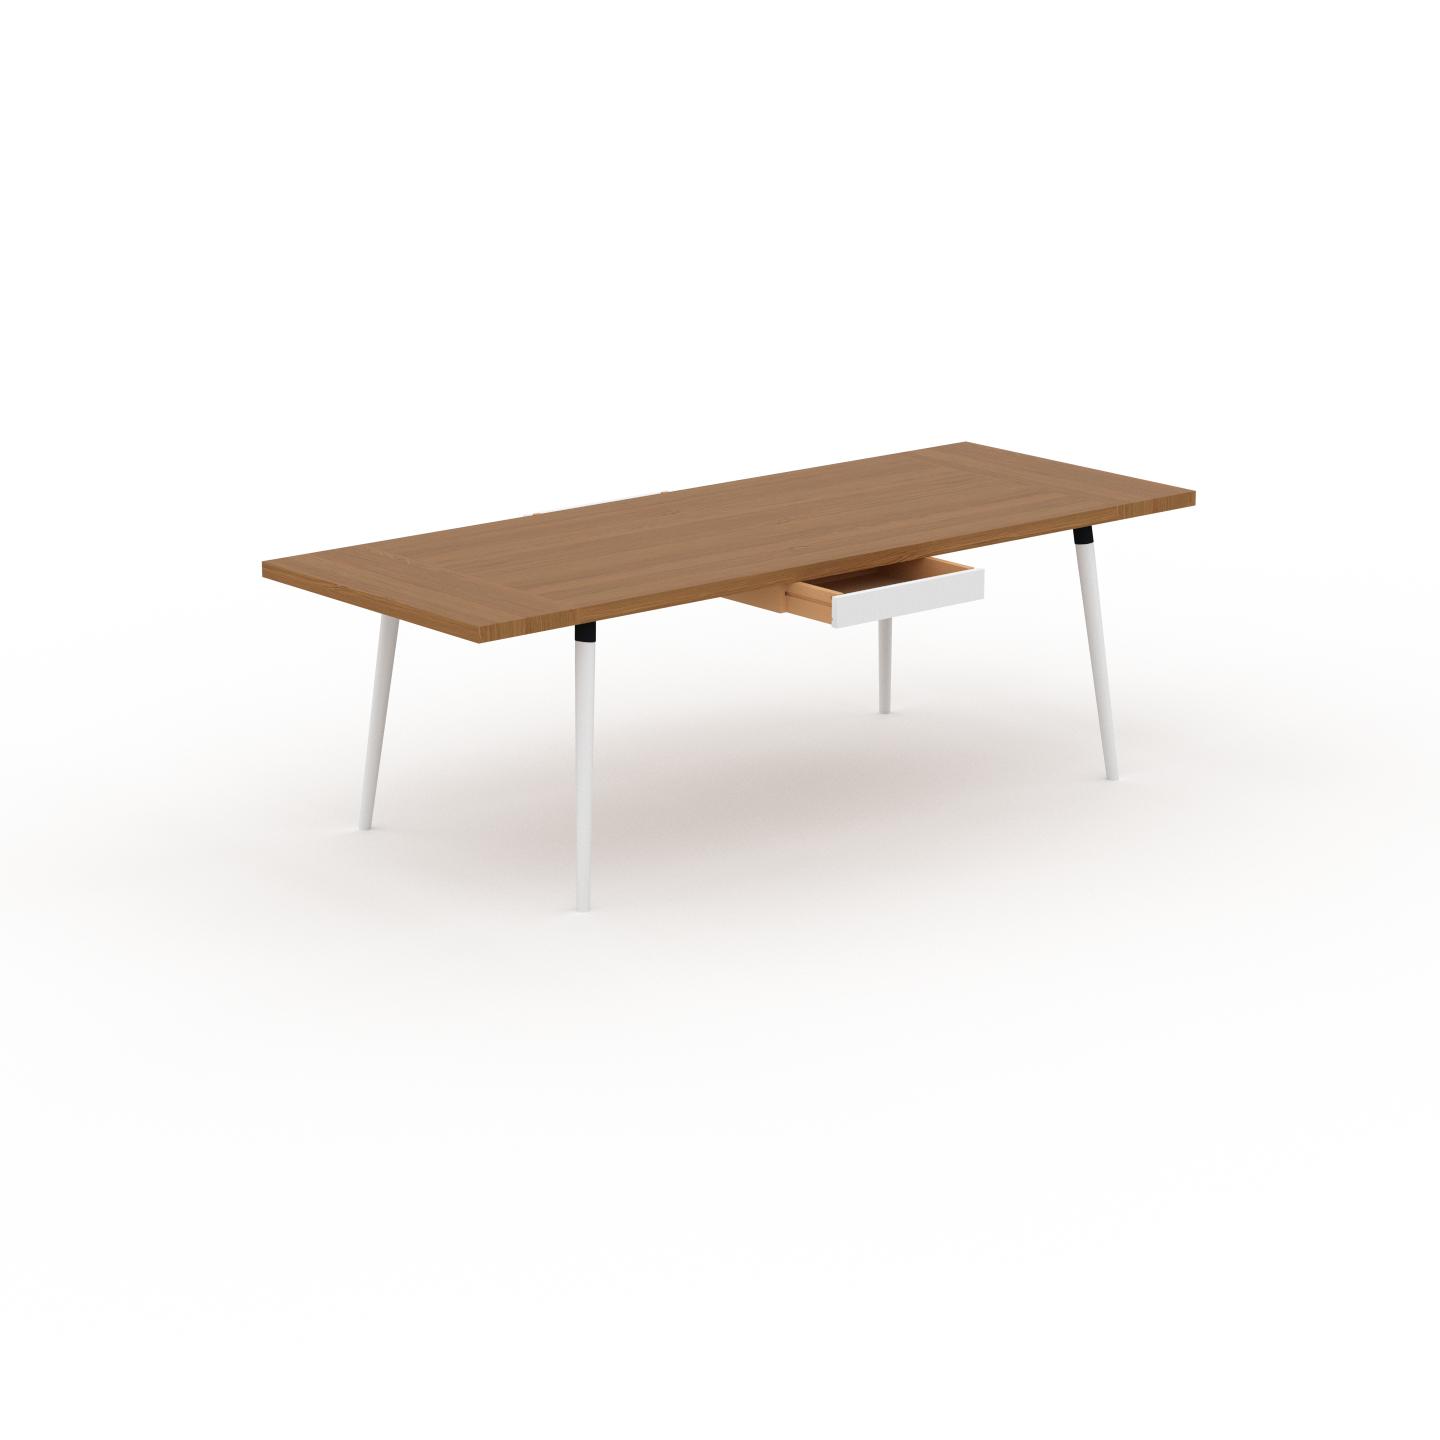 MYCS Schreibtisch Massivholz Eiche - Moderner Massivholz-Schreibtisch: mit 2 Schublade/n - Hochwertige Materialien - 240 x 75 x 90 cm, konfigurierbar